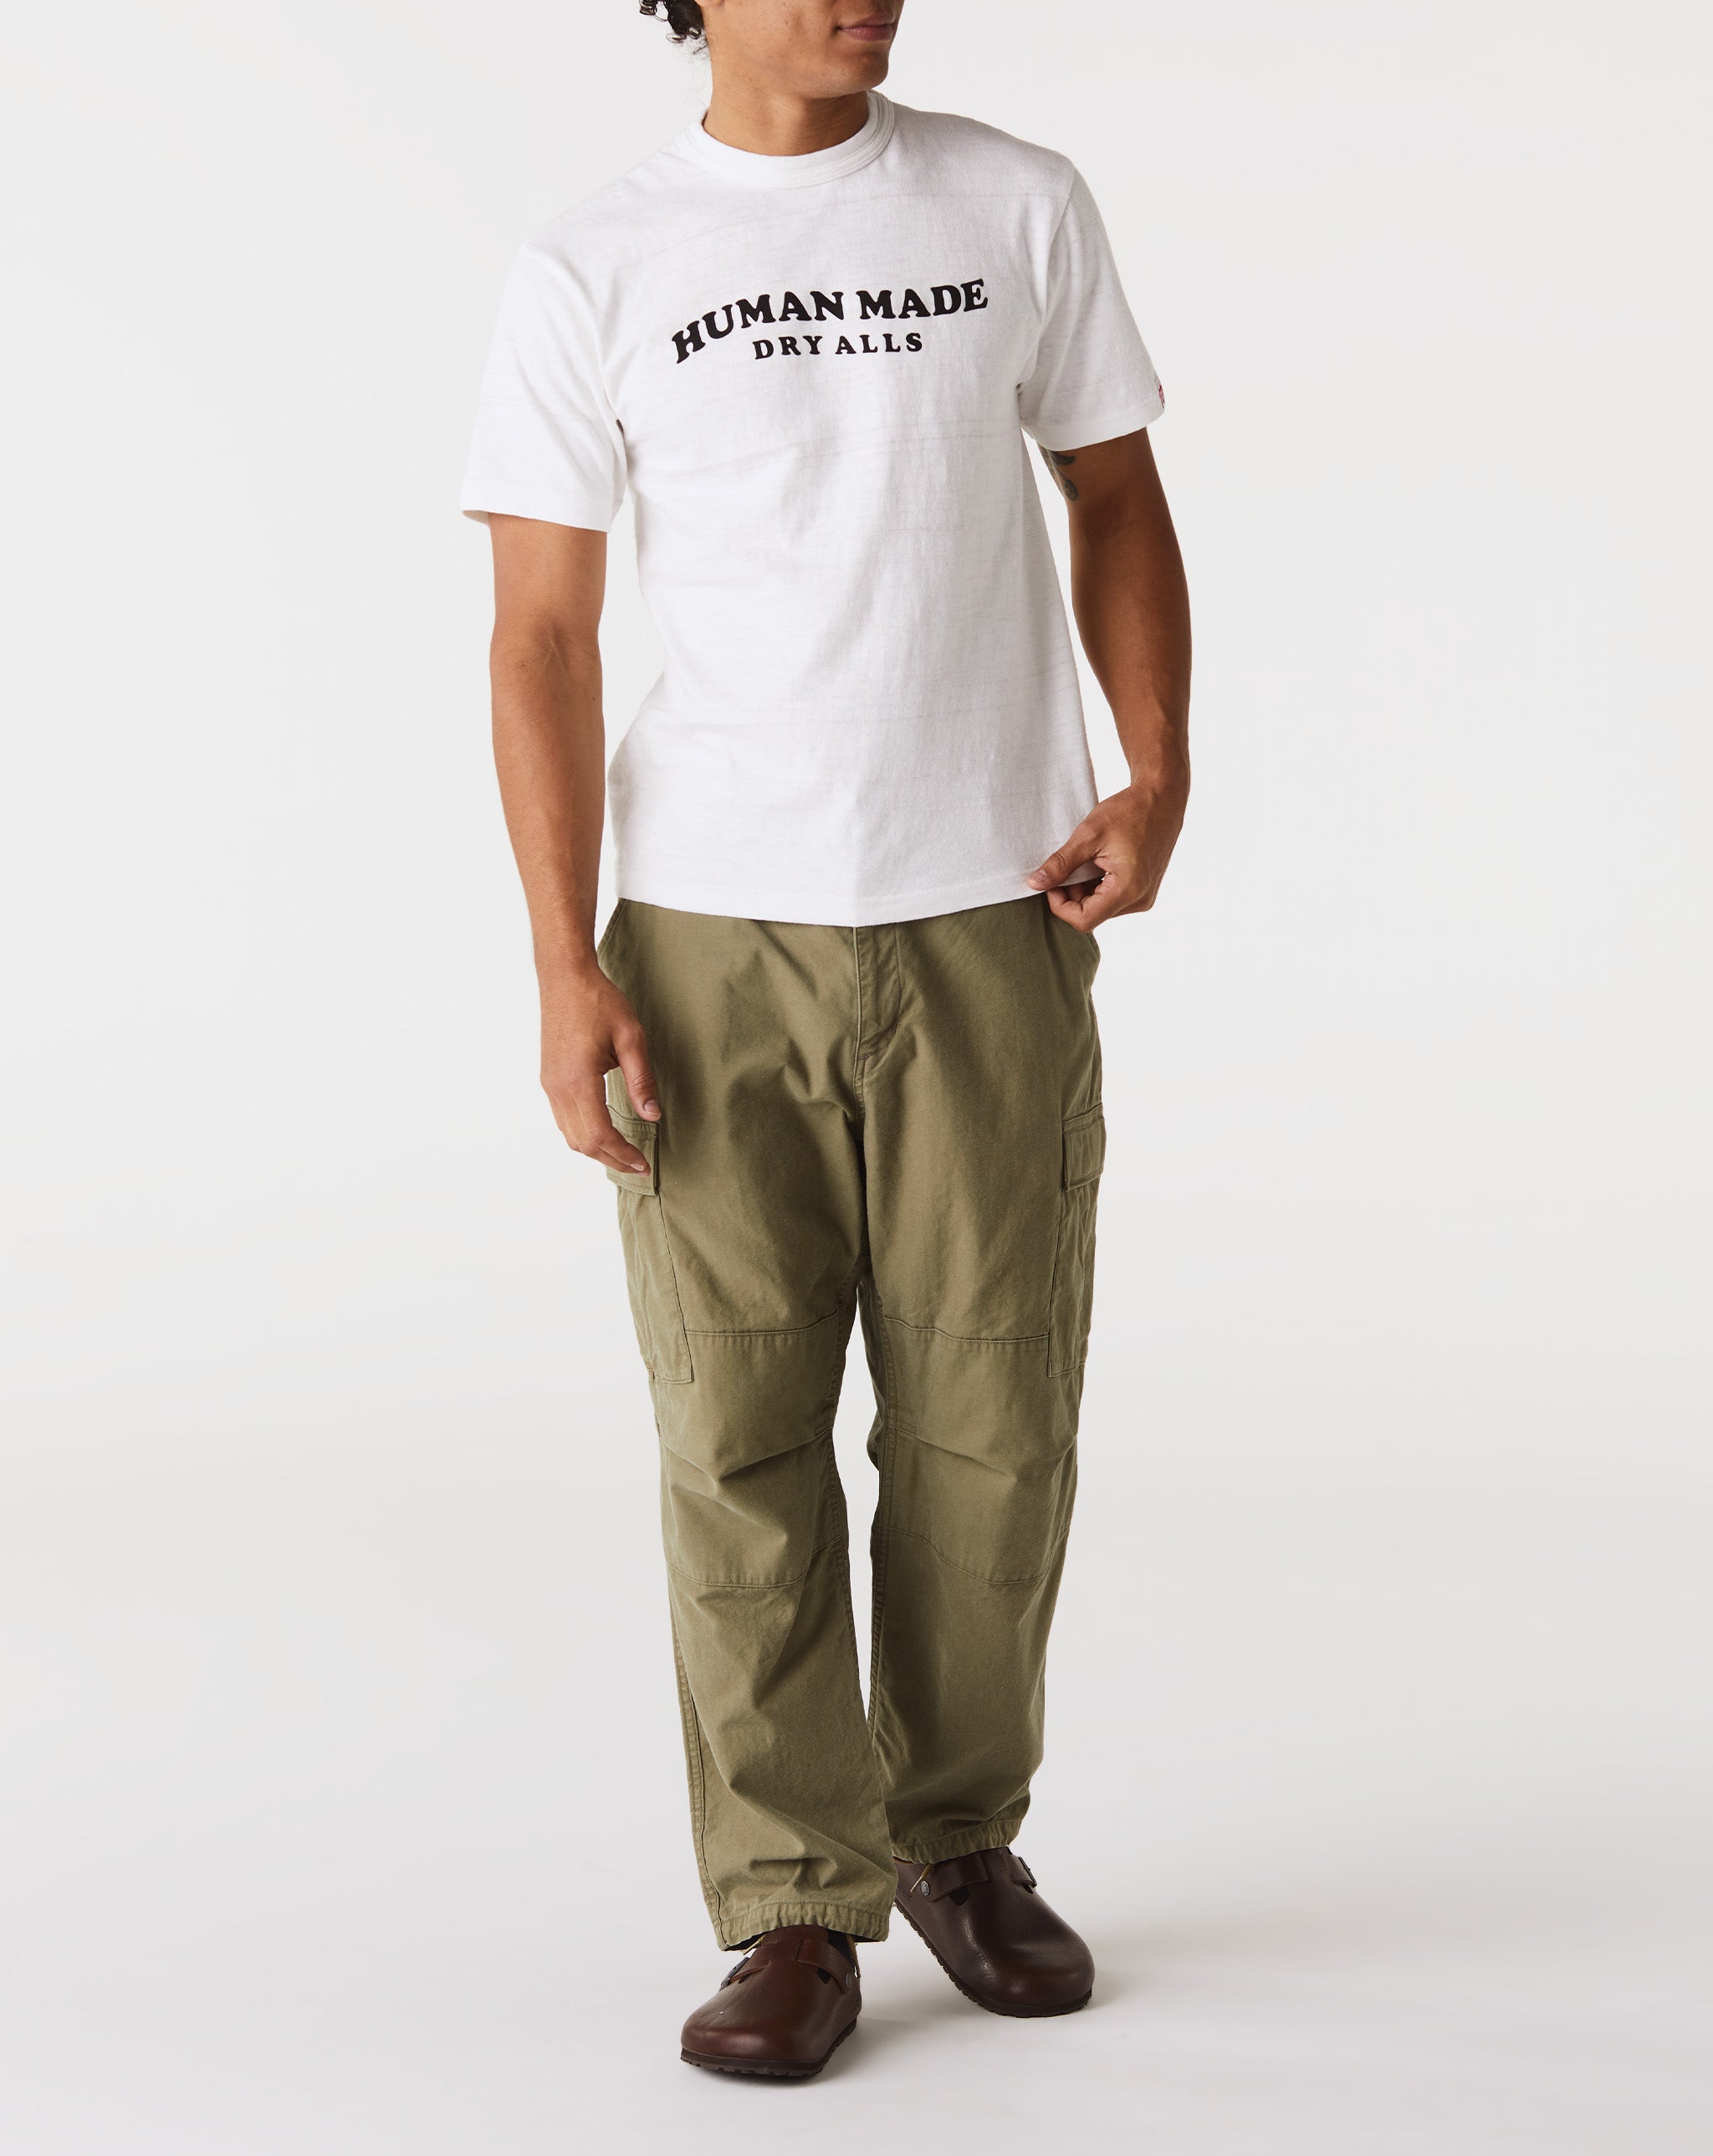 Human Made Graphic T-Shirt #7  - Cheap Urlfreeze Jordan outlet